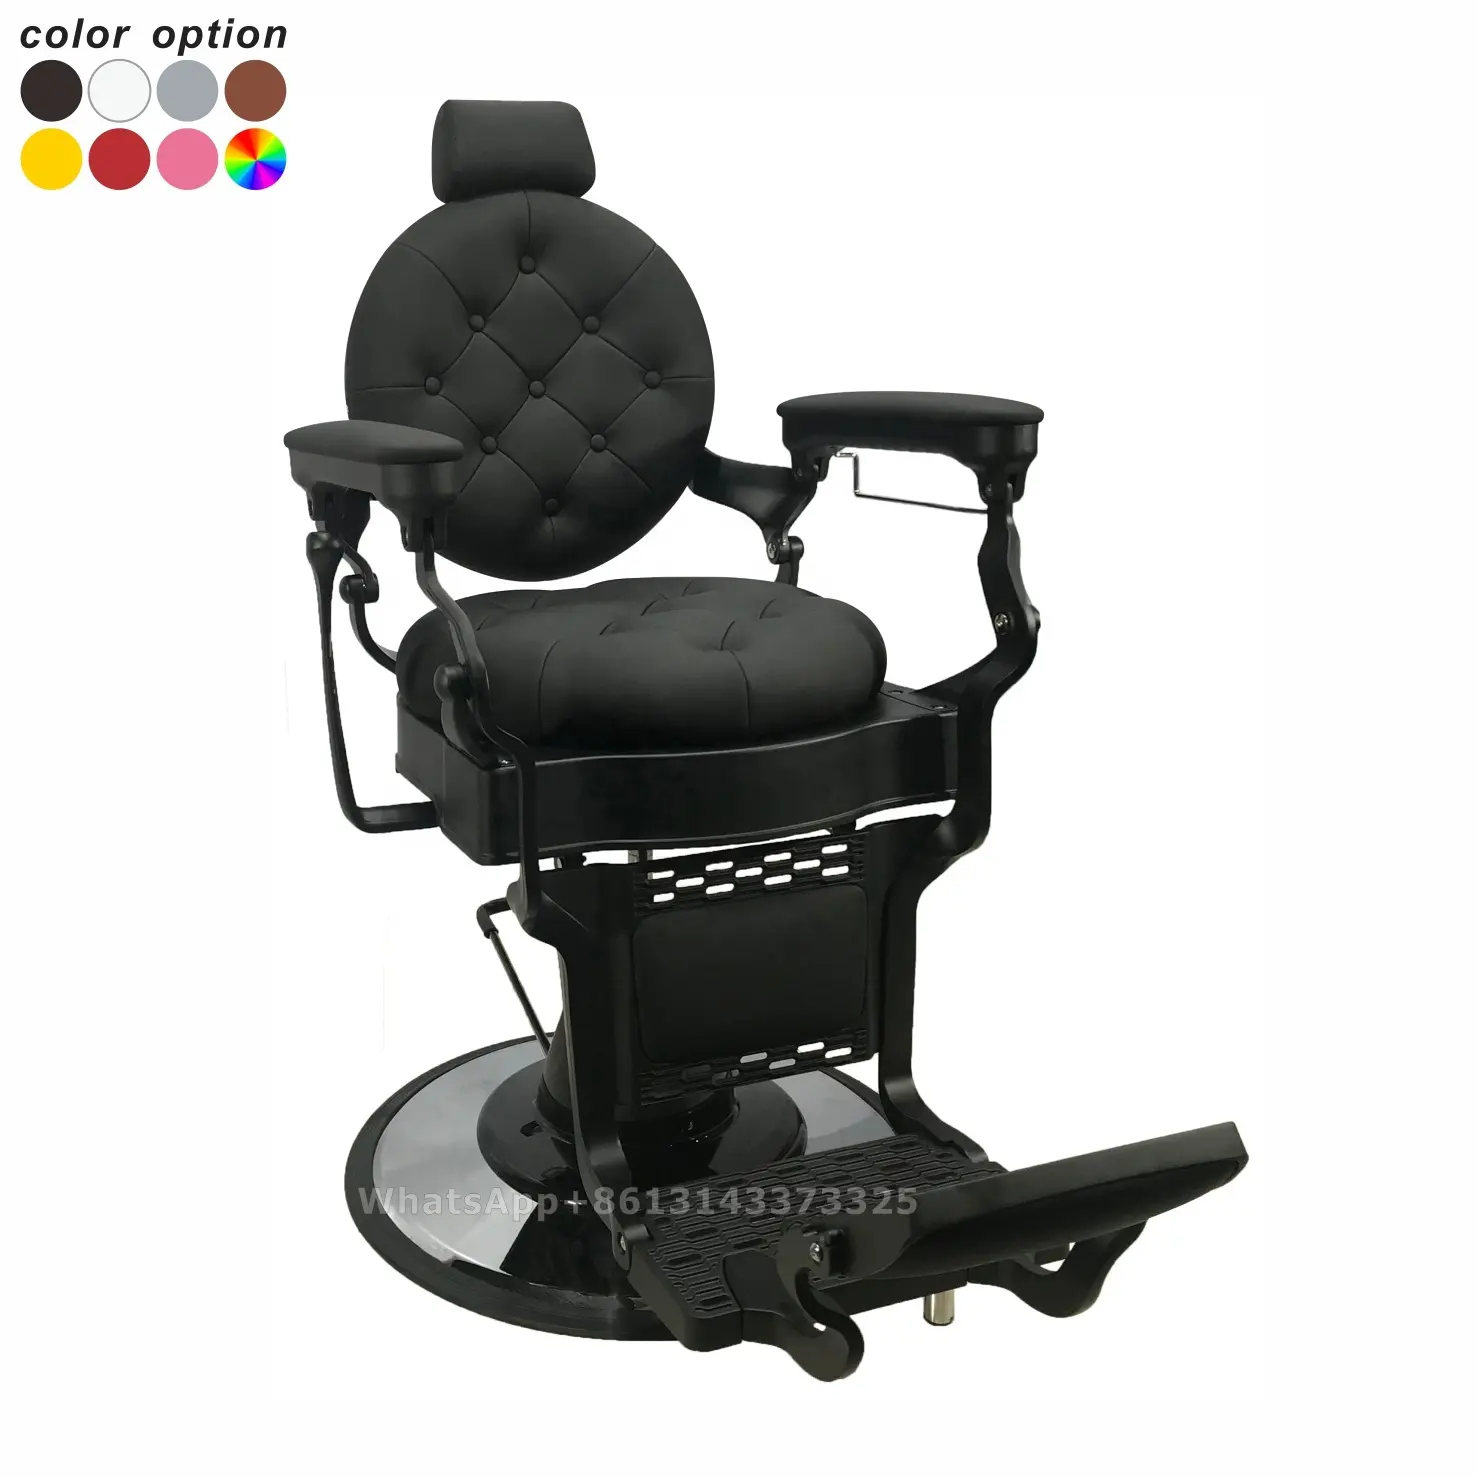 Черный винтажный сверхпрочный парикмахерский стул, дешевая мебель для парикмахерской, под заказ, античное оборудование для парикмахерской BC8831G